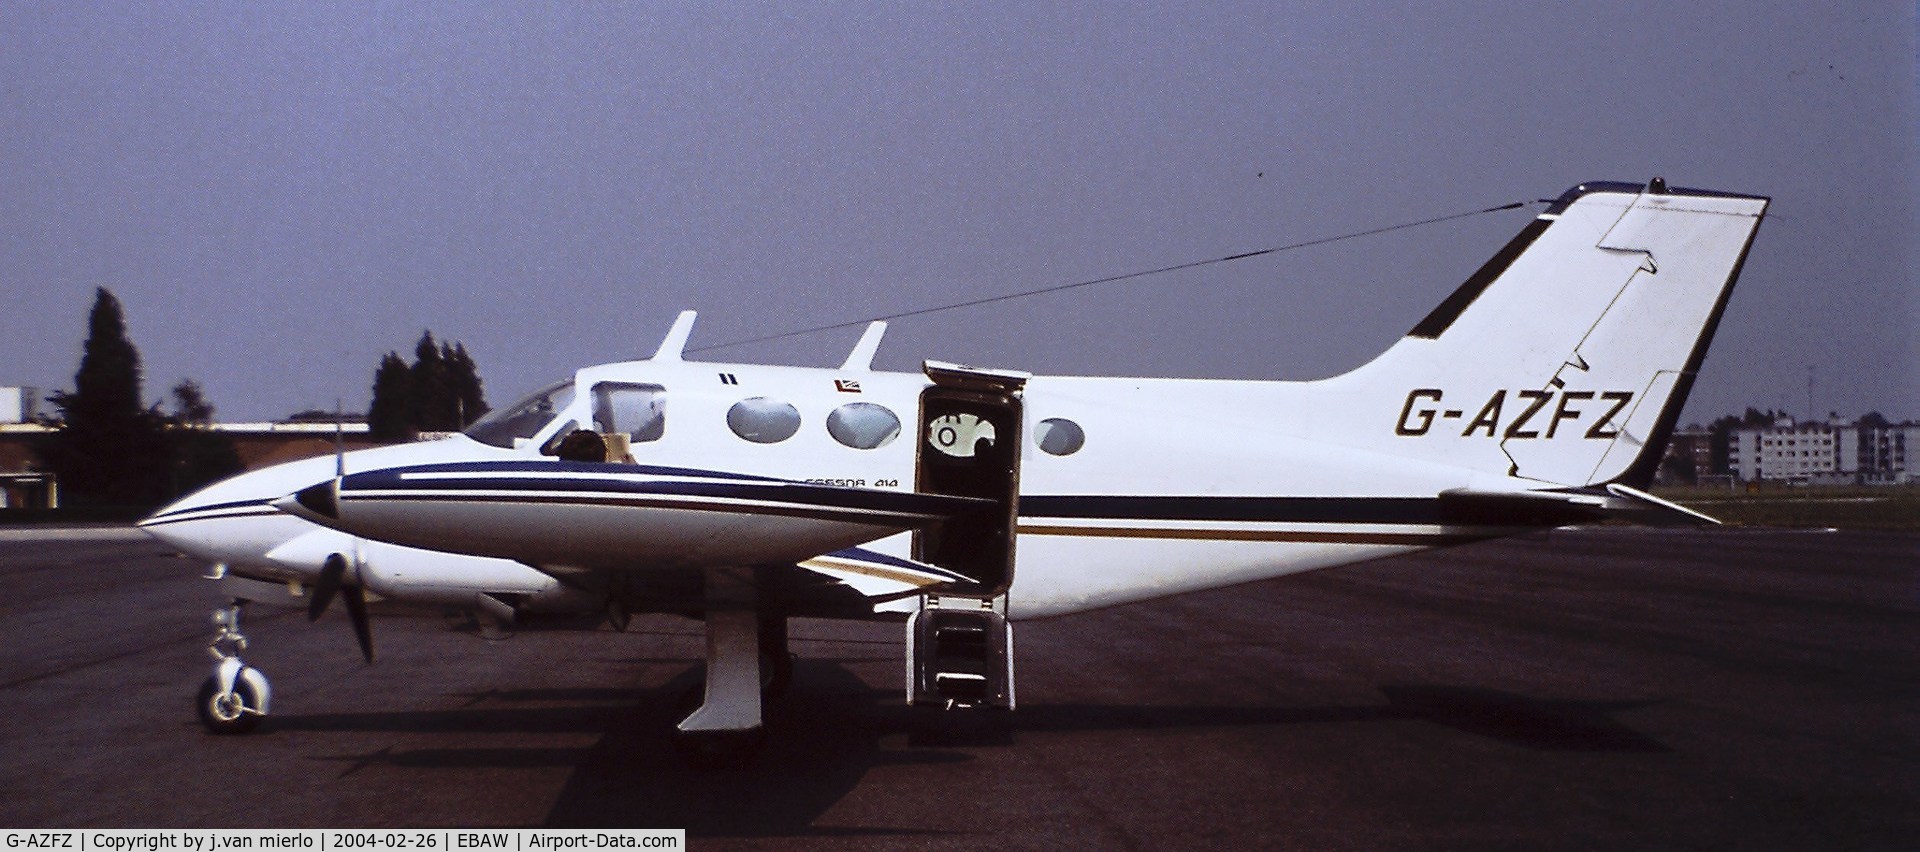 G-AZFZ, 1971 Cessna 414 Chancellor C/N 414-0175, Antwerp, Belgium